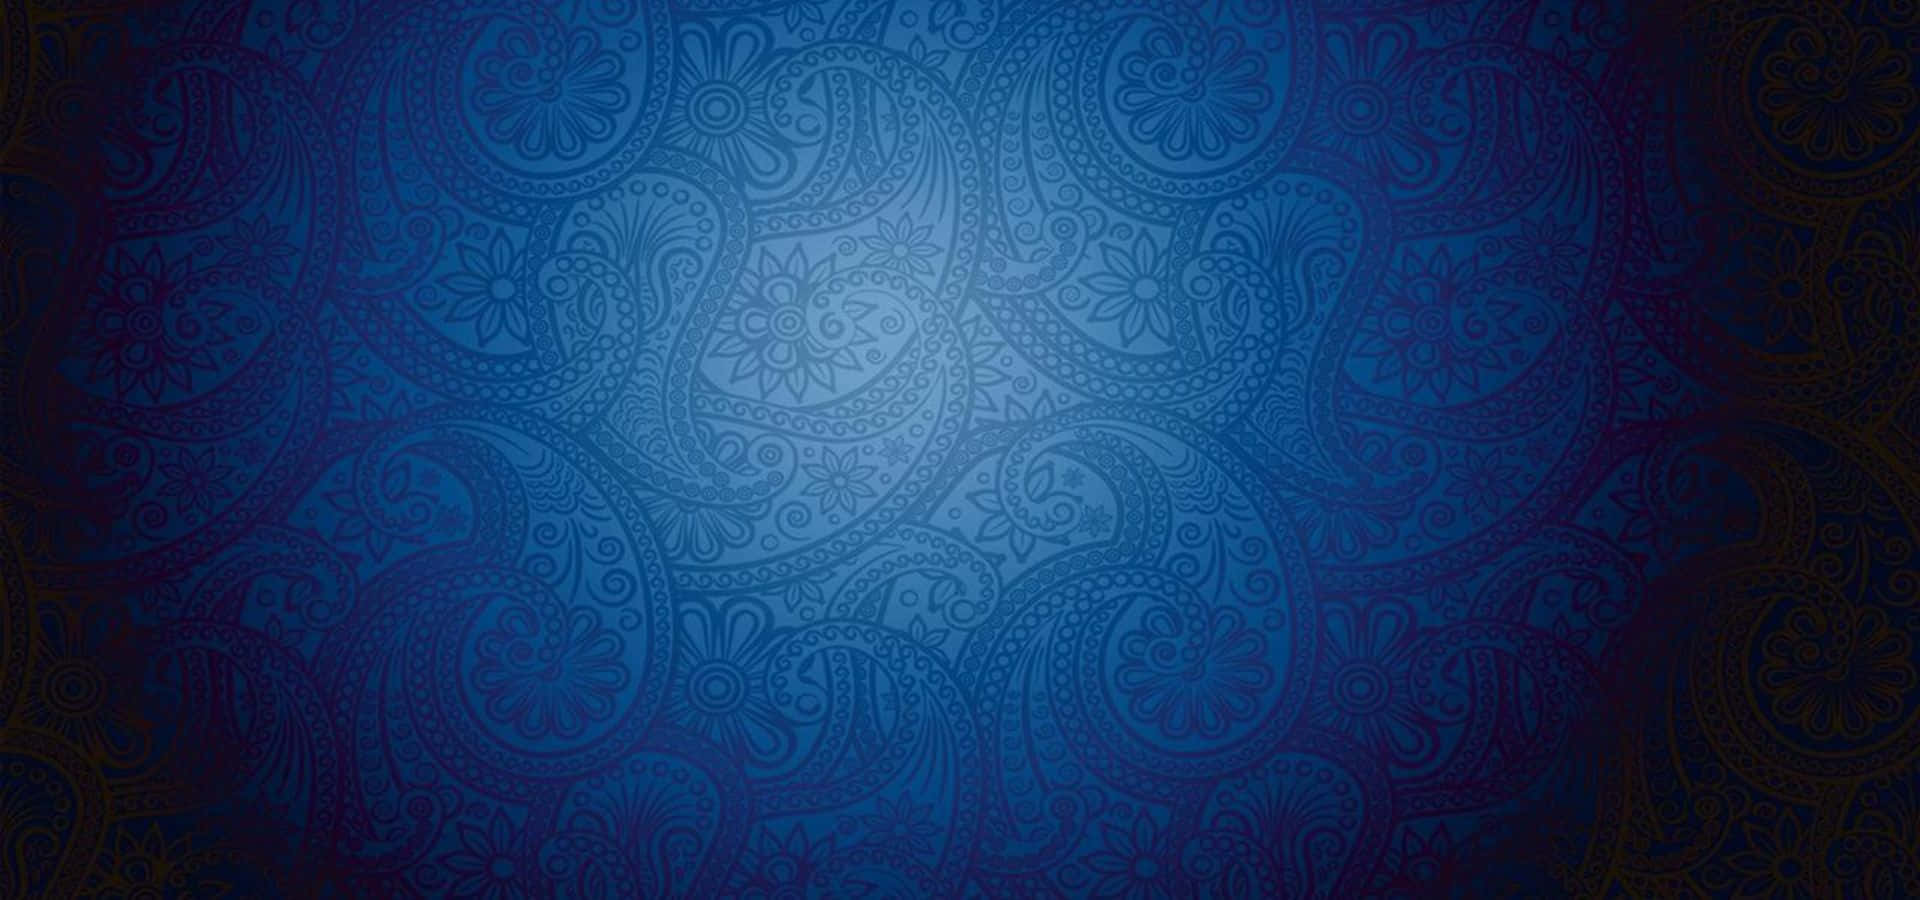 Fondode Pantalla De Flores Azules Con Diseño De Cachemira | Precio 1 Crédito Usd $1